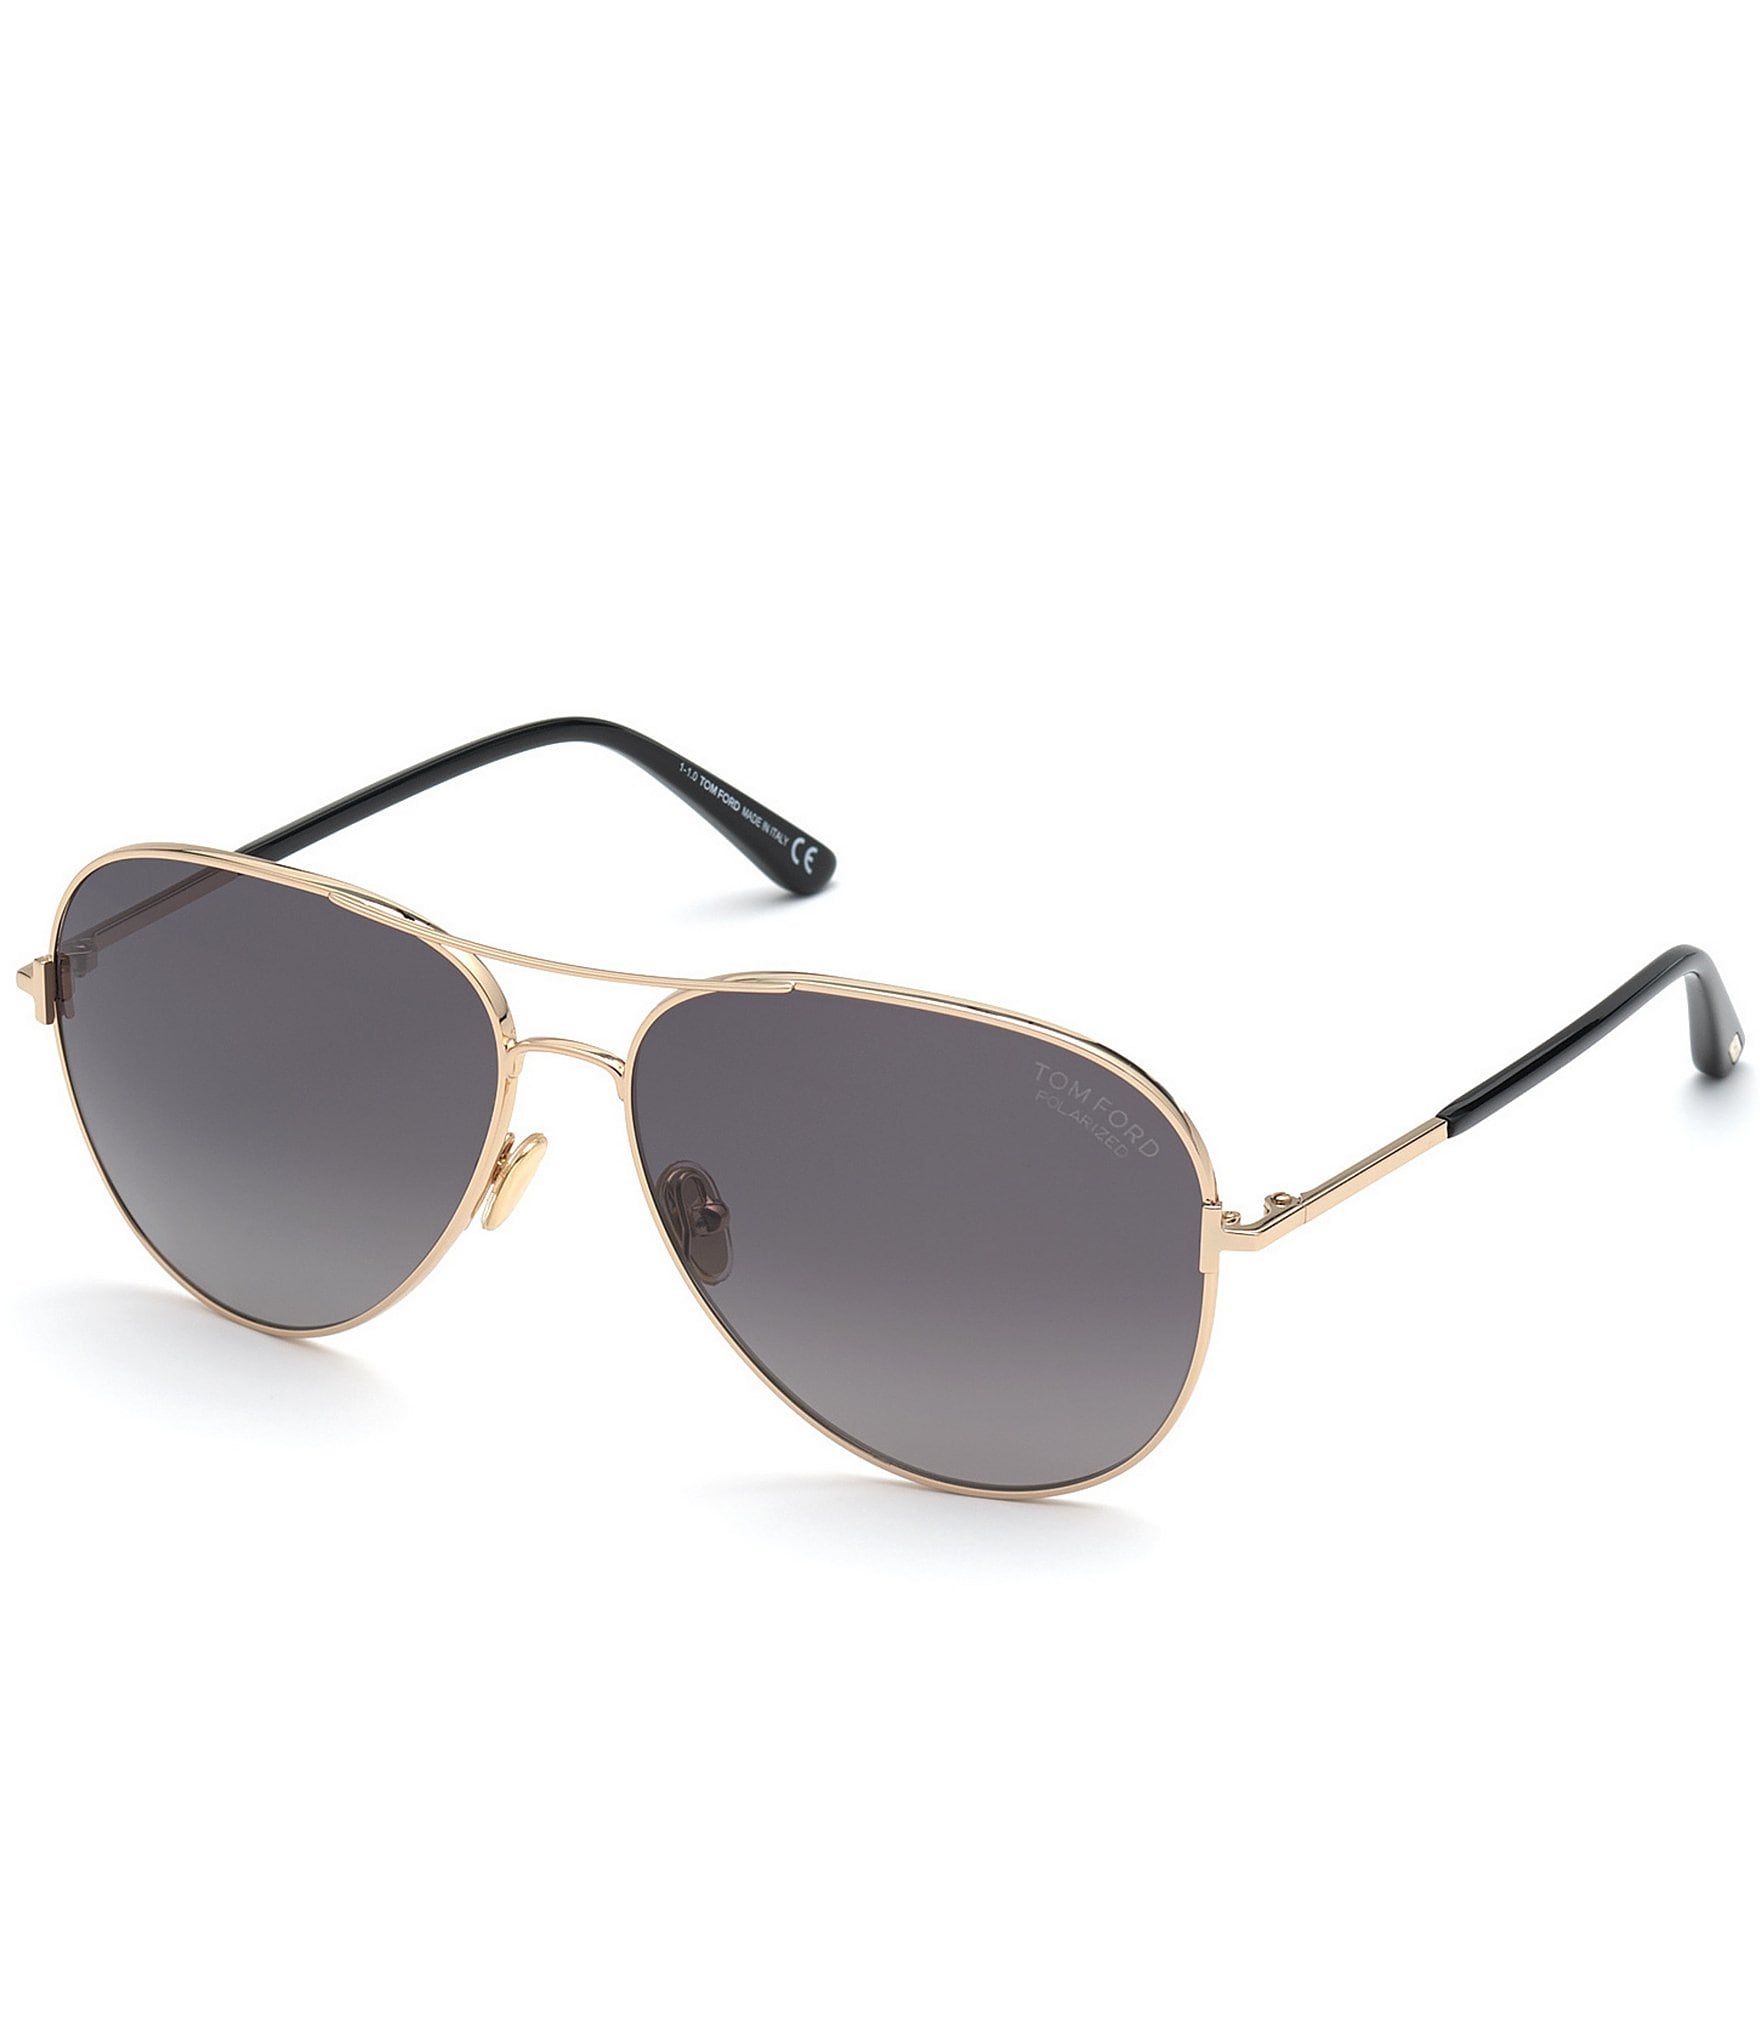 Buy TED SMITH Full Rim UV Protection Aviator Sunglasses For Men Women  Devil-C3 60-16-145 Online